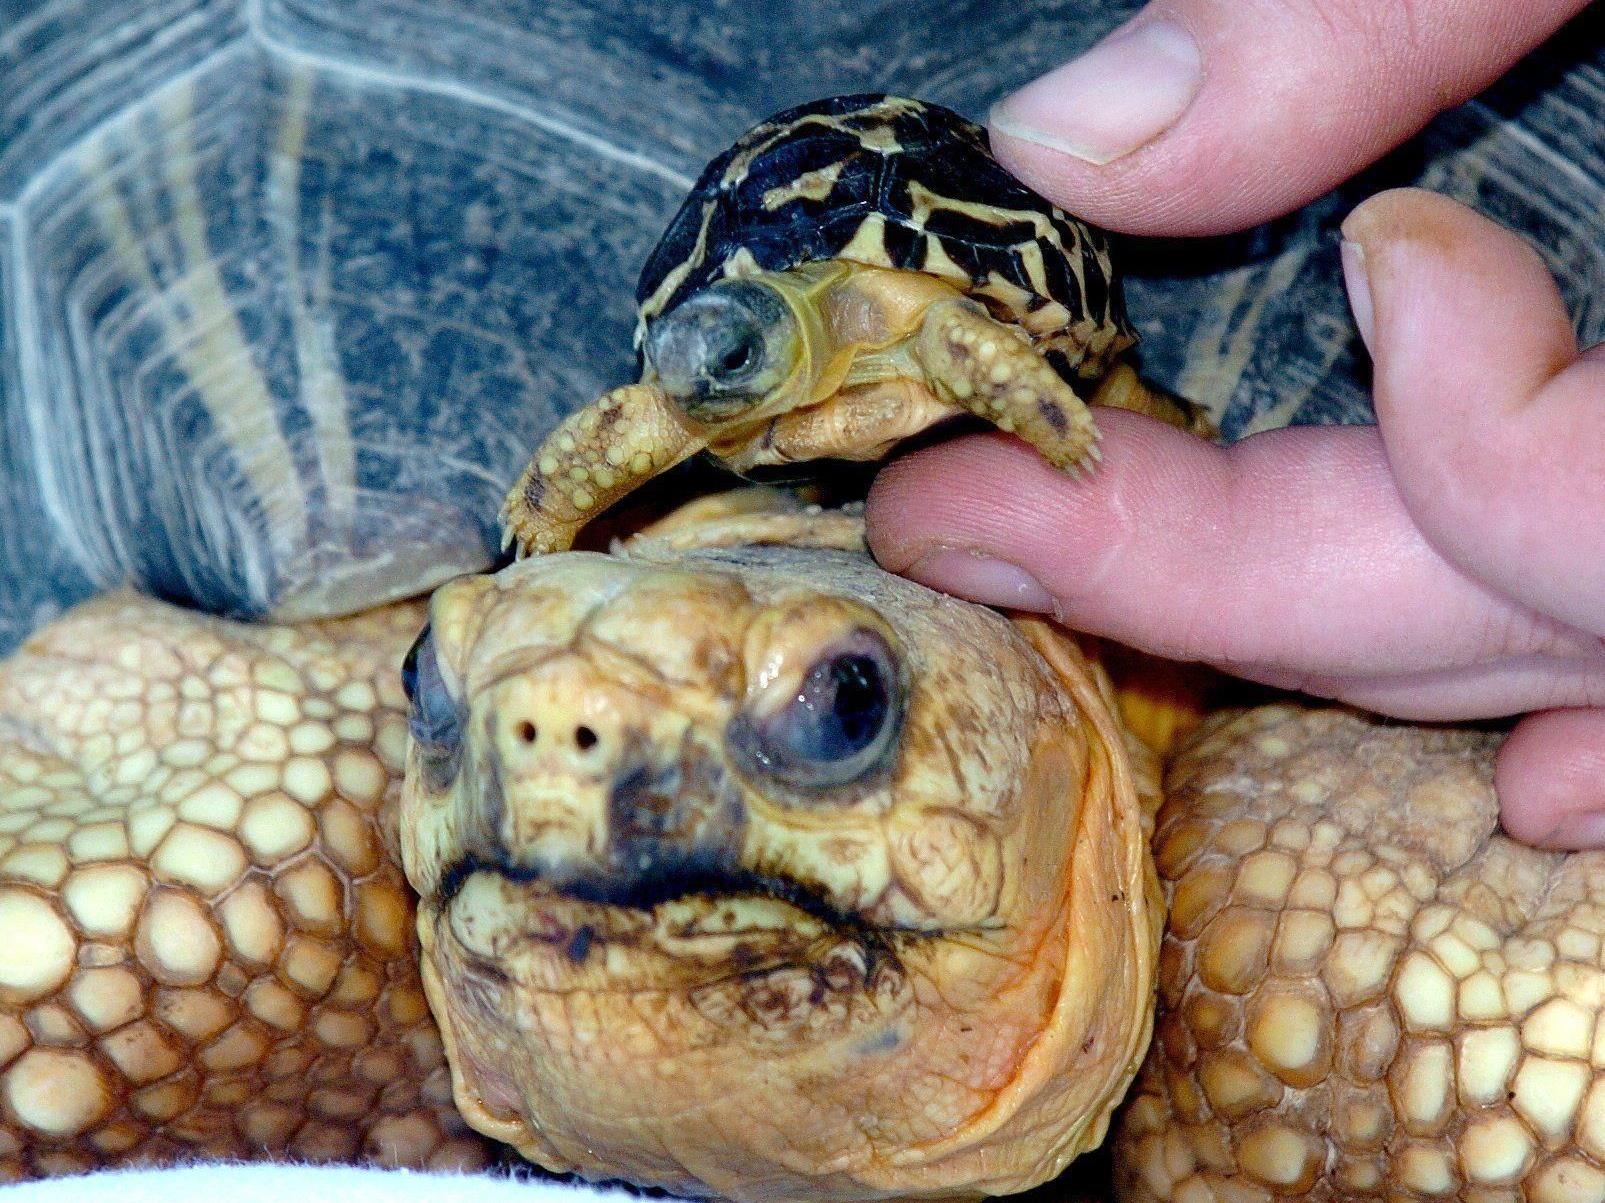 Strahlenschildkröten sind wegen ihres Panzers bei Sammlern sehr beliebt.